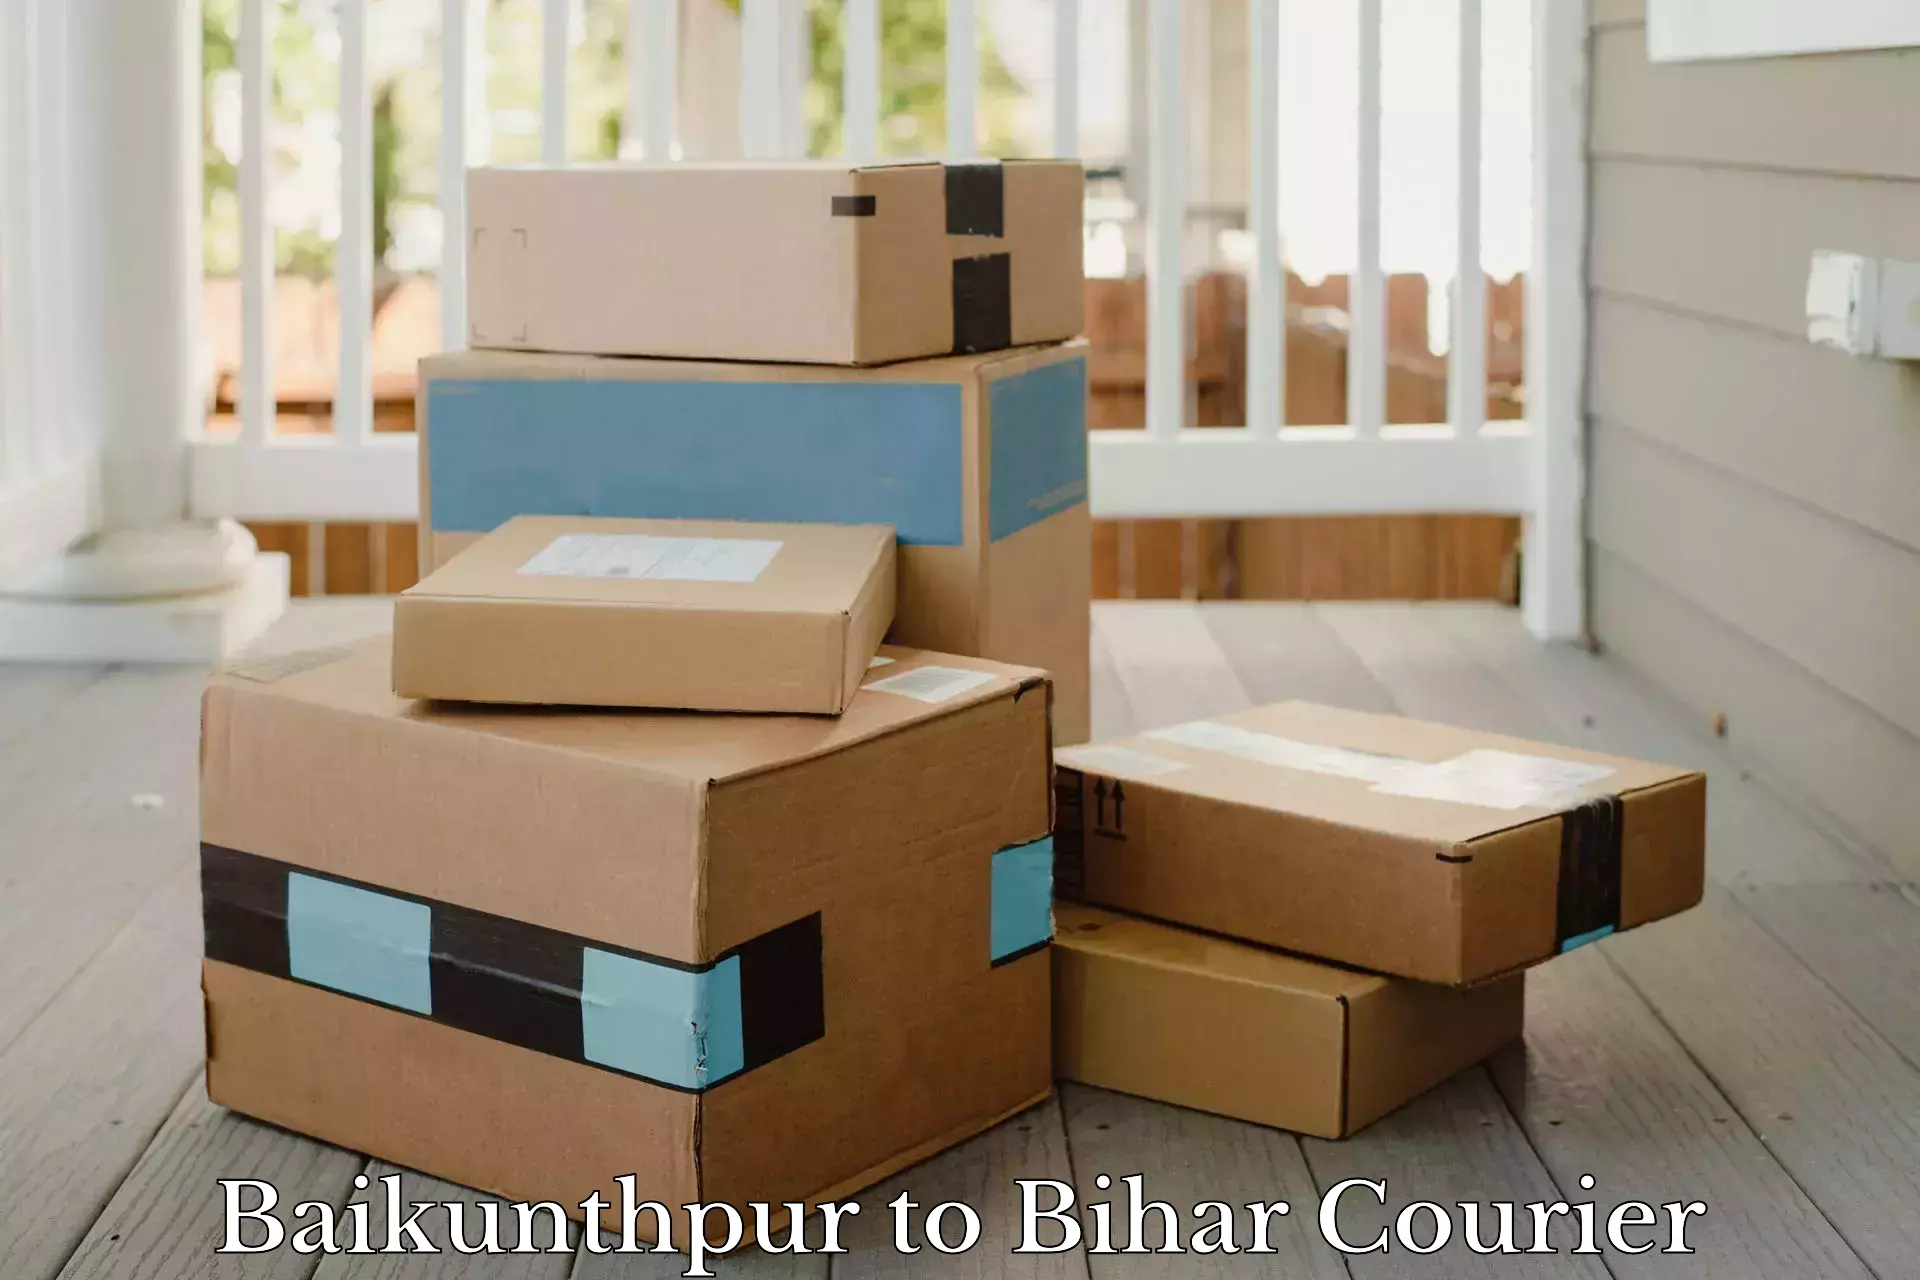 Express logistics providers Baikunthpur to Madanpur